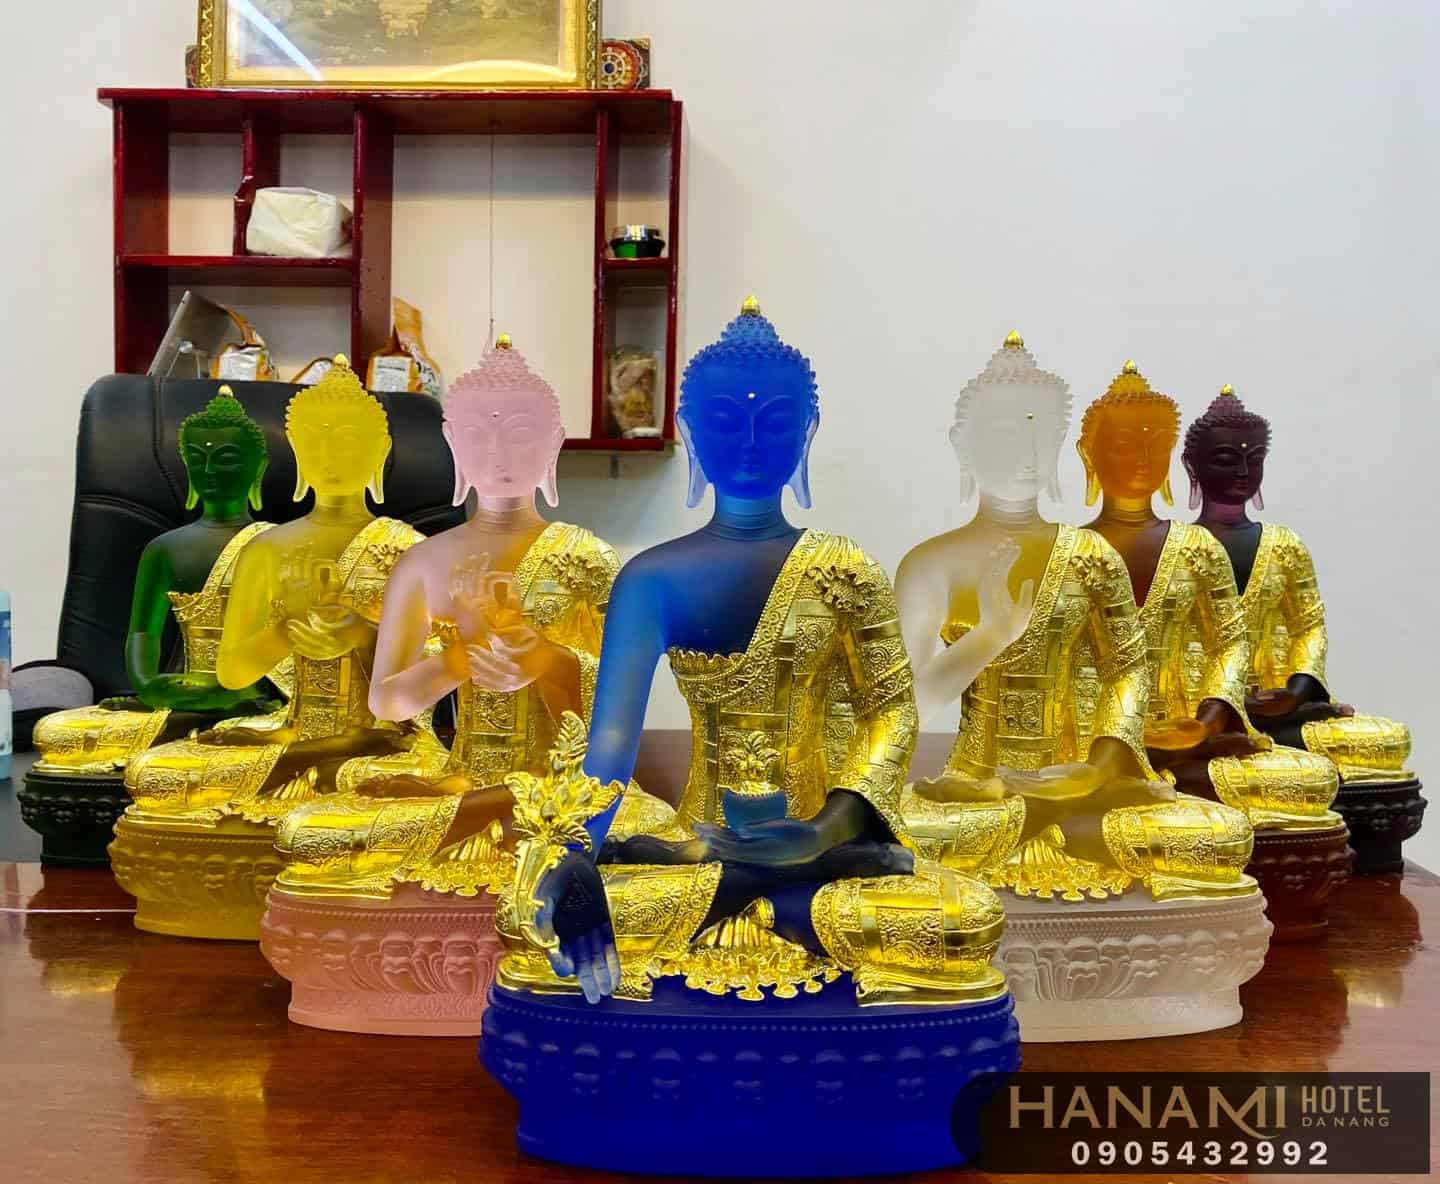 văn hoá phẩm Phật giáo Đà Nẵng